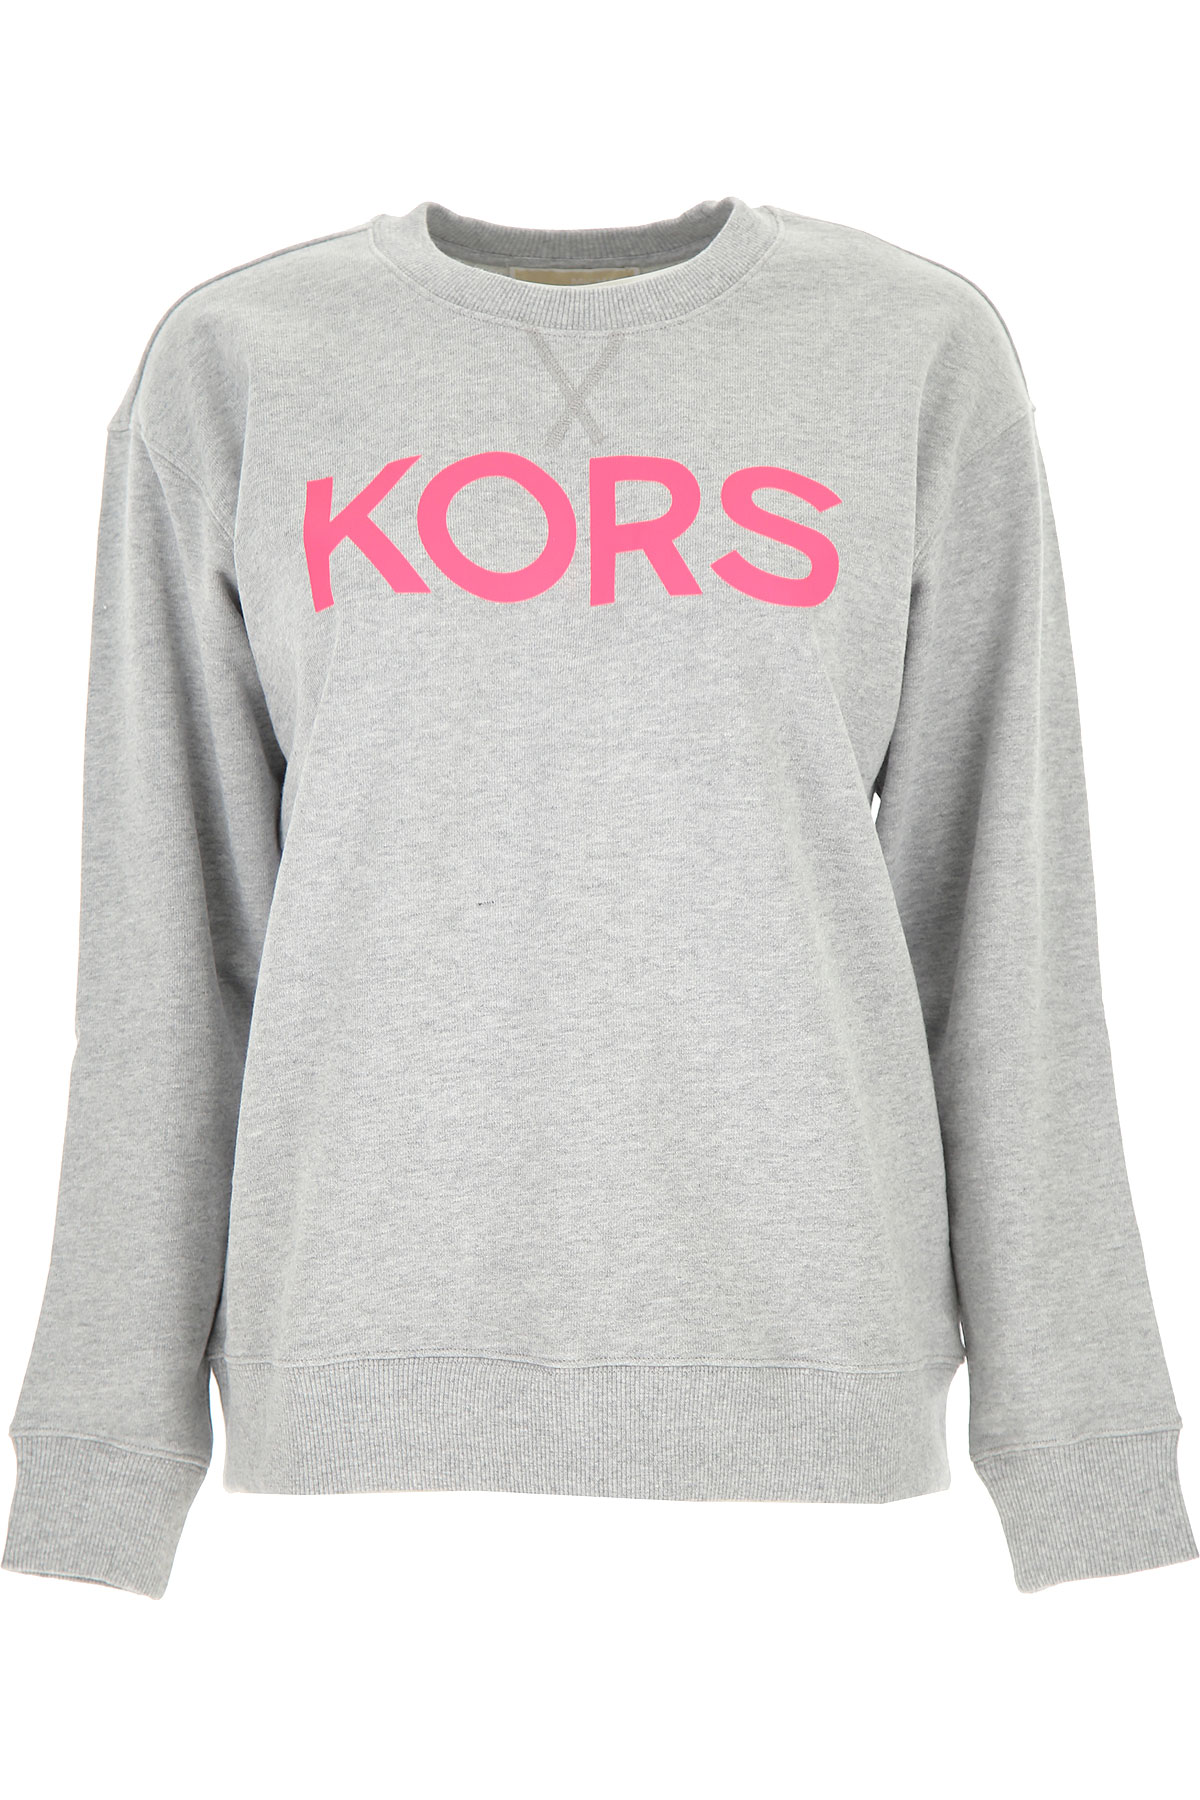 Michael Kors Sweatshirt für Damen, Kapuzenpulli, Hoodie, Sweats Günstig im Sale, Neon Pink, Baumwolle, 2017, 40 44 M